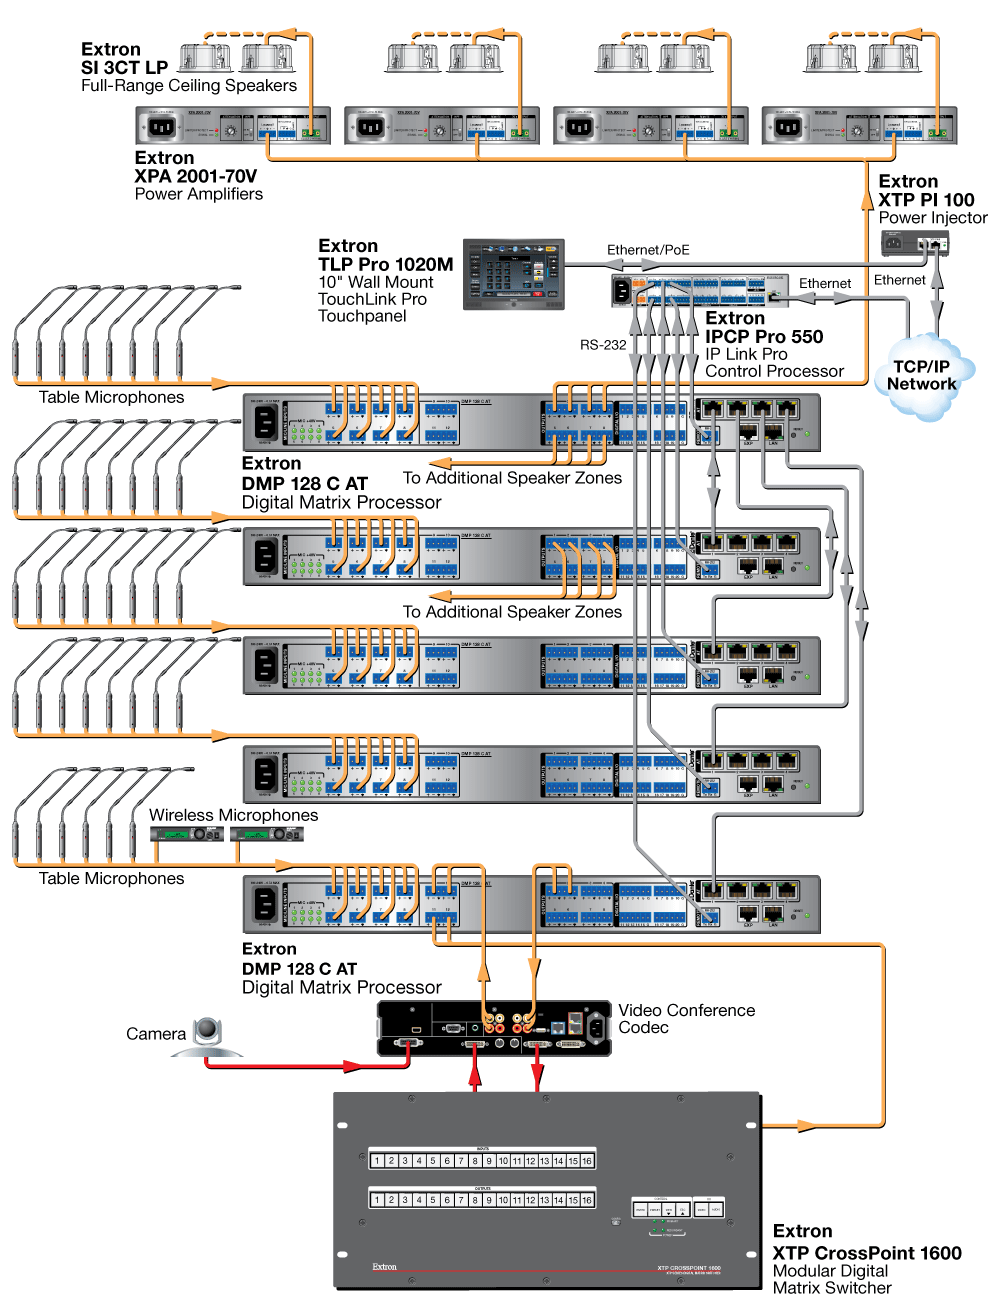 60-1178-10 - Digital Matrix Processor